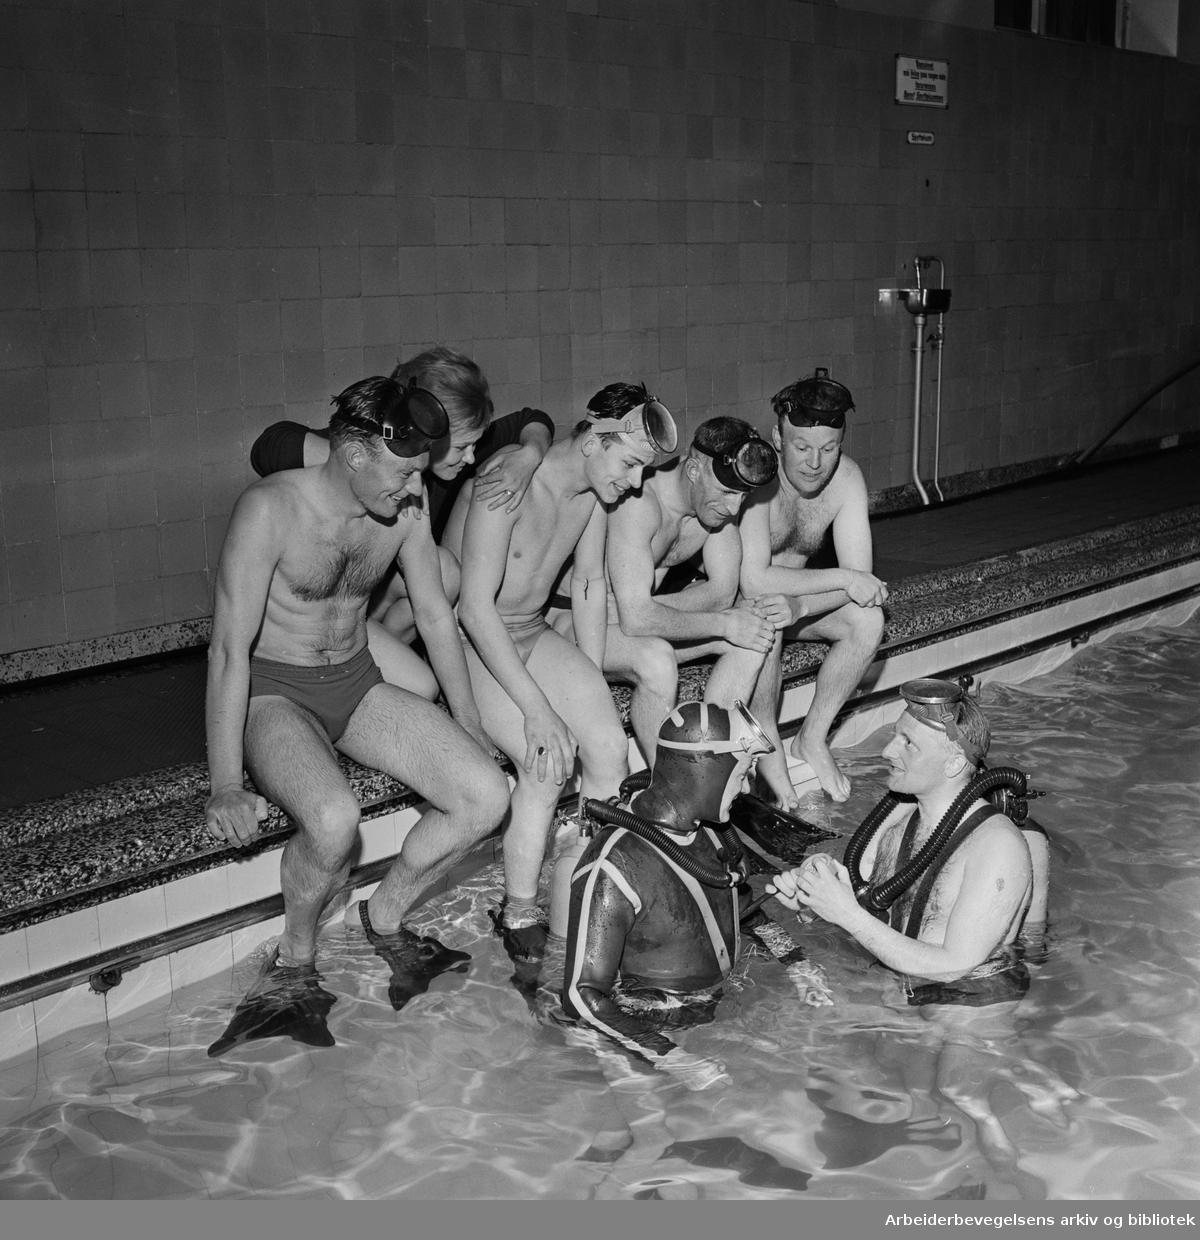 Kurs i dykking, under ledelse av instruktør Erik Sørum fra Oslo Froskemannsskole. Antatt Sagene Bad. Mai 1962.